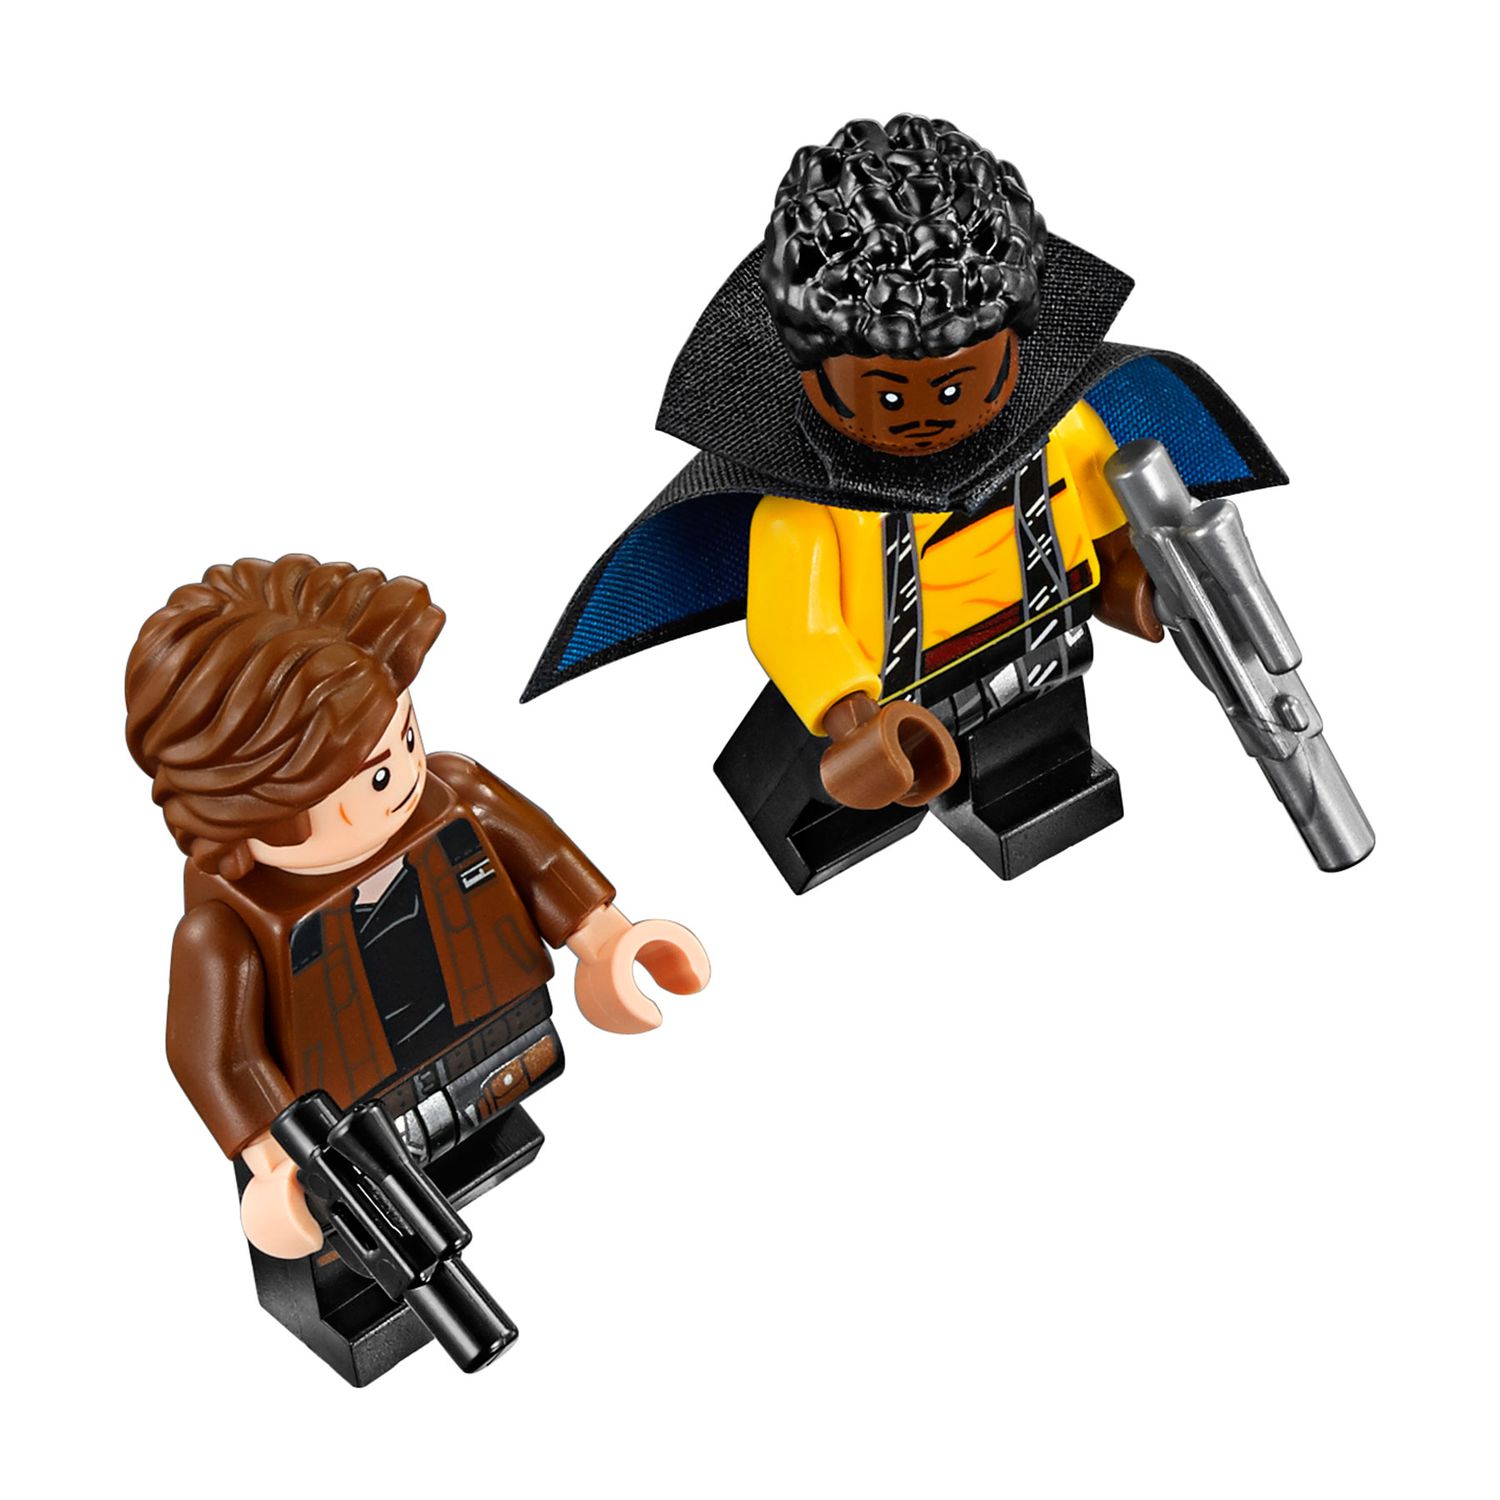 LEGO Han Solo and Lando Calrissian